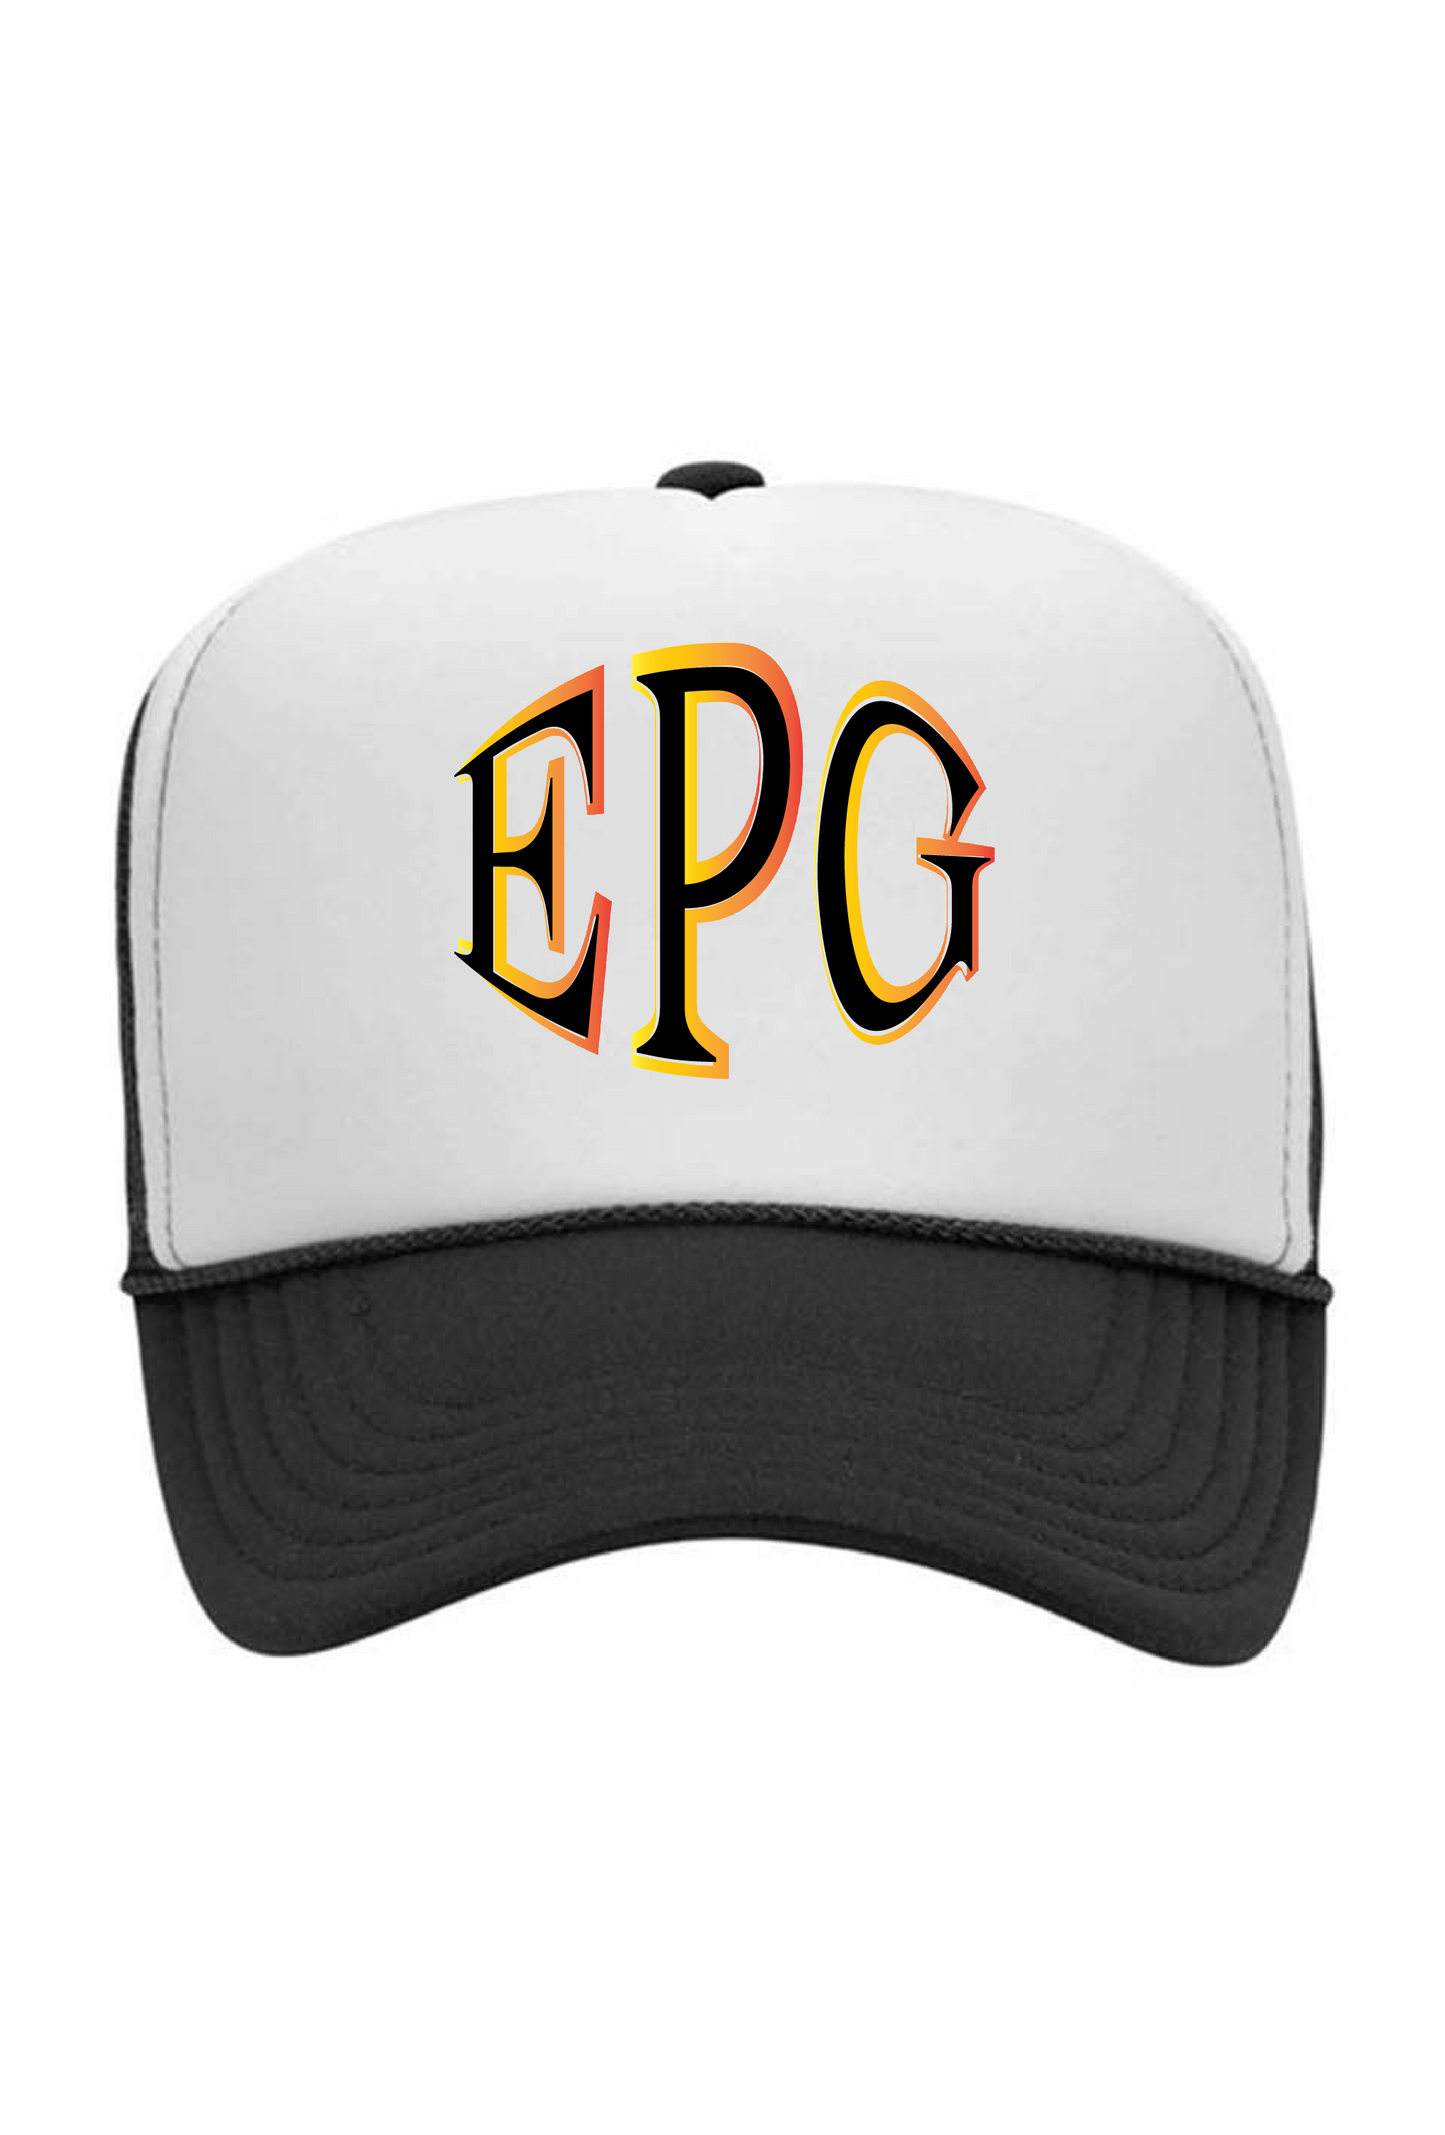 EPG Trucker Hat